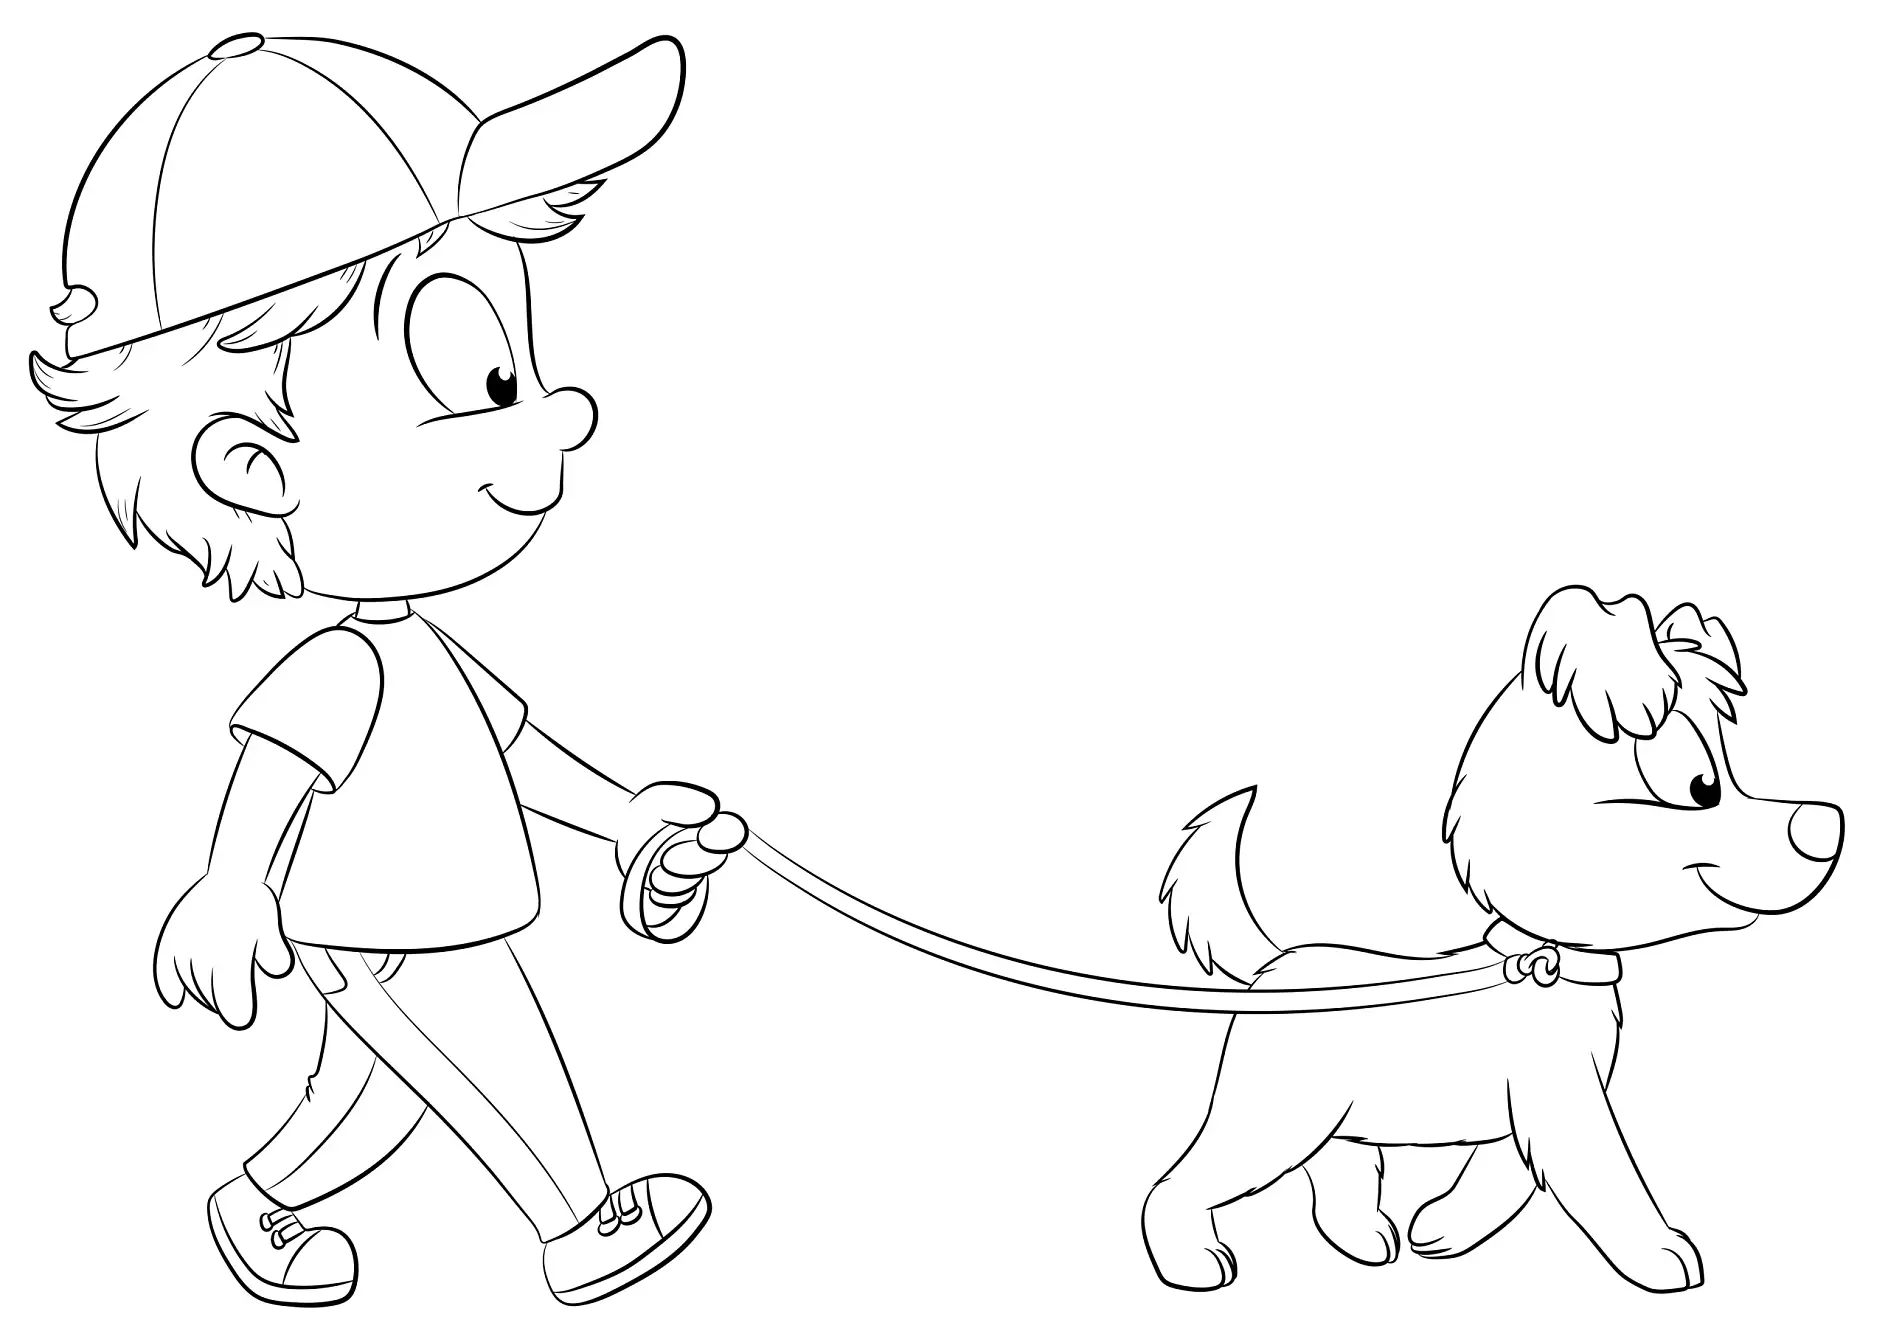 Ausmalbild Kind geht mit Hund GassiJunge geht mit Hund spazieren - Vektor-Illustration